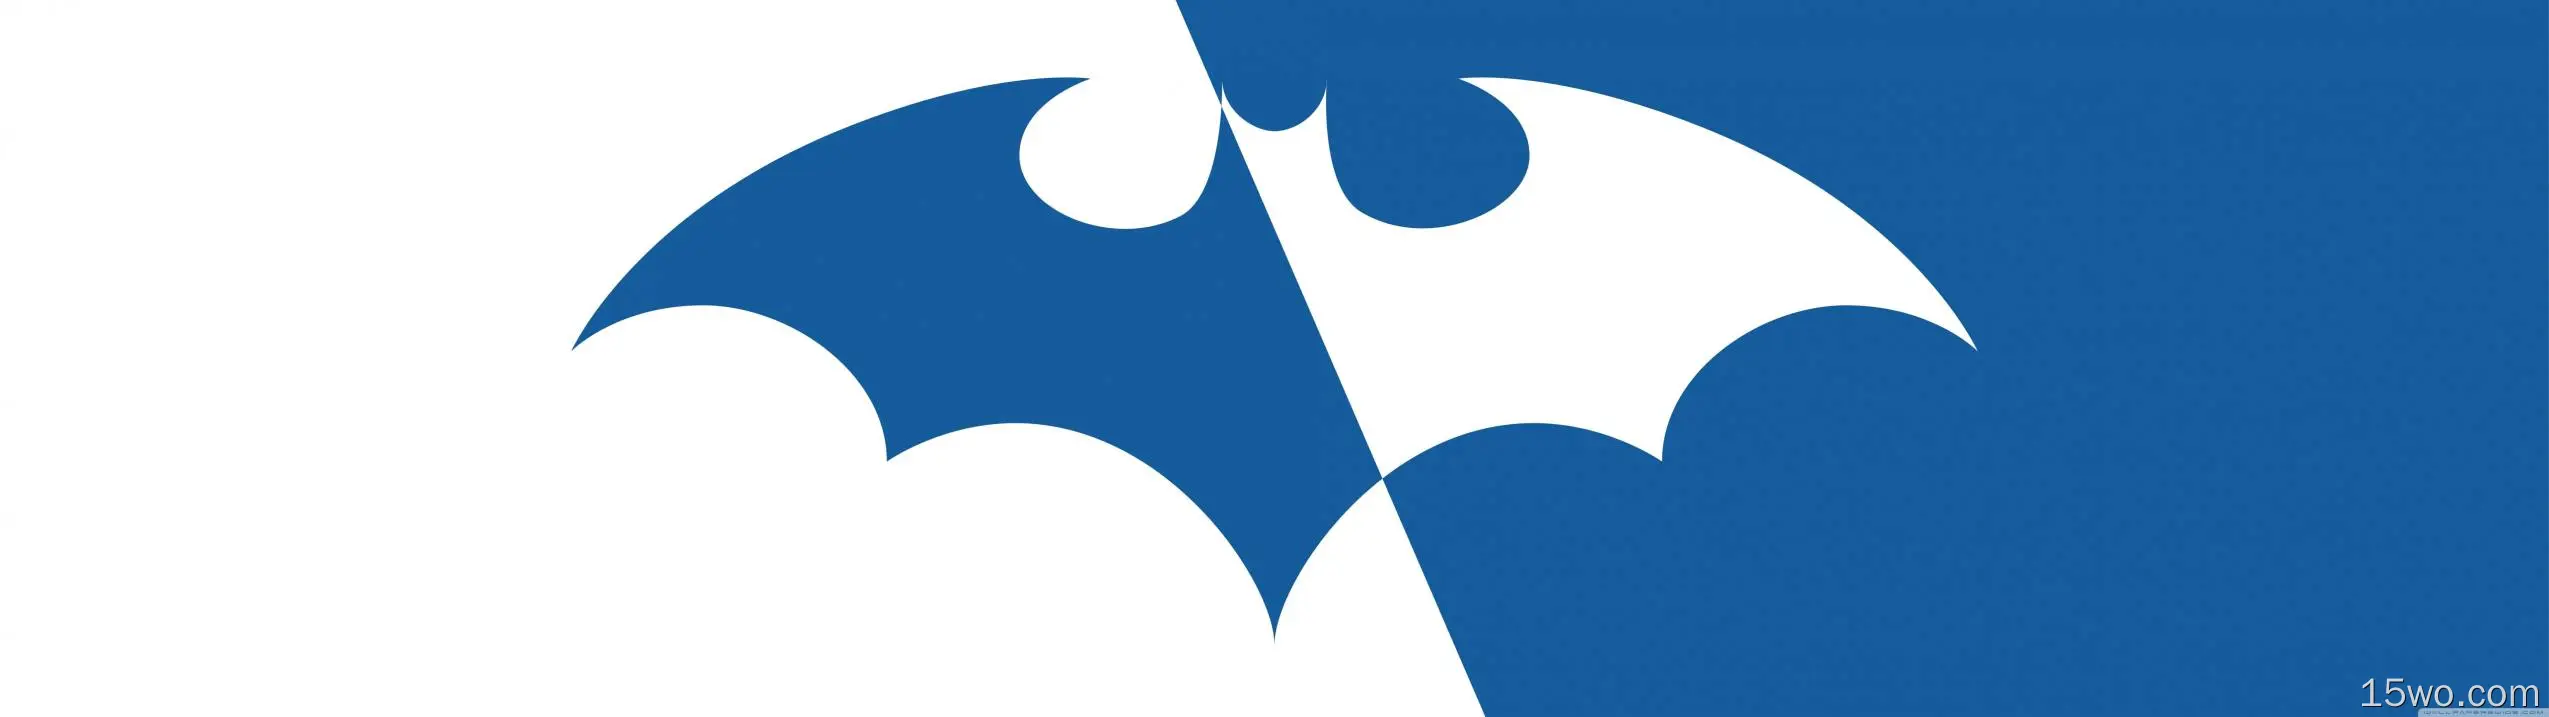 漫画 蝙蝠侠 Batman Symbol Batman Logo 高清壁纸